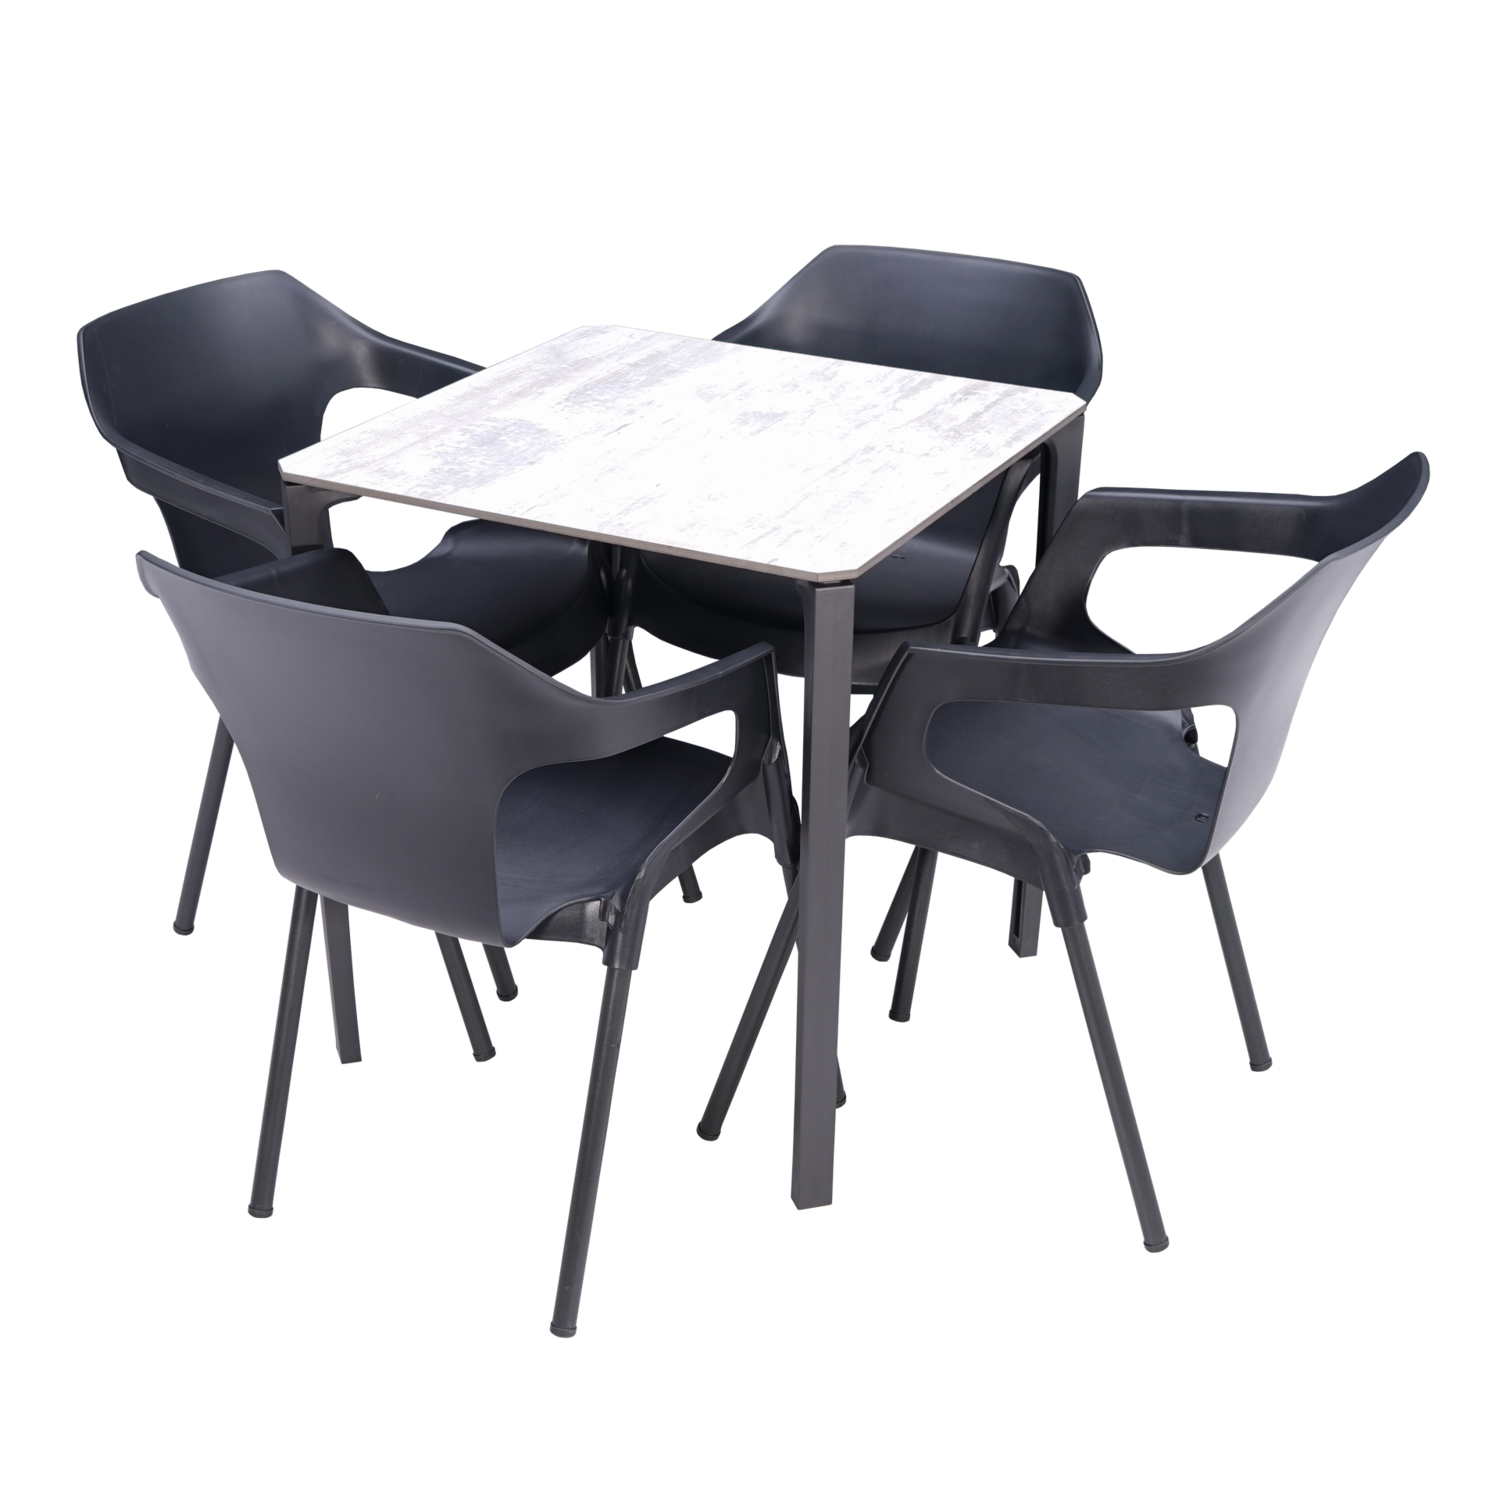 10 X CONJUNTO REF-22
Compuesto por 40 sillas Mónaco antracita y 10 mesa horeca, tablero madera lavada blanco 70X70.